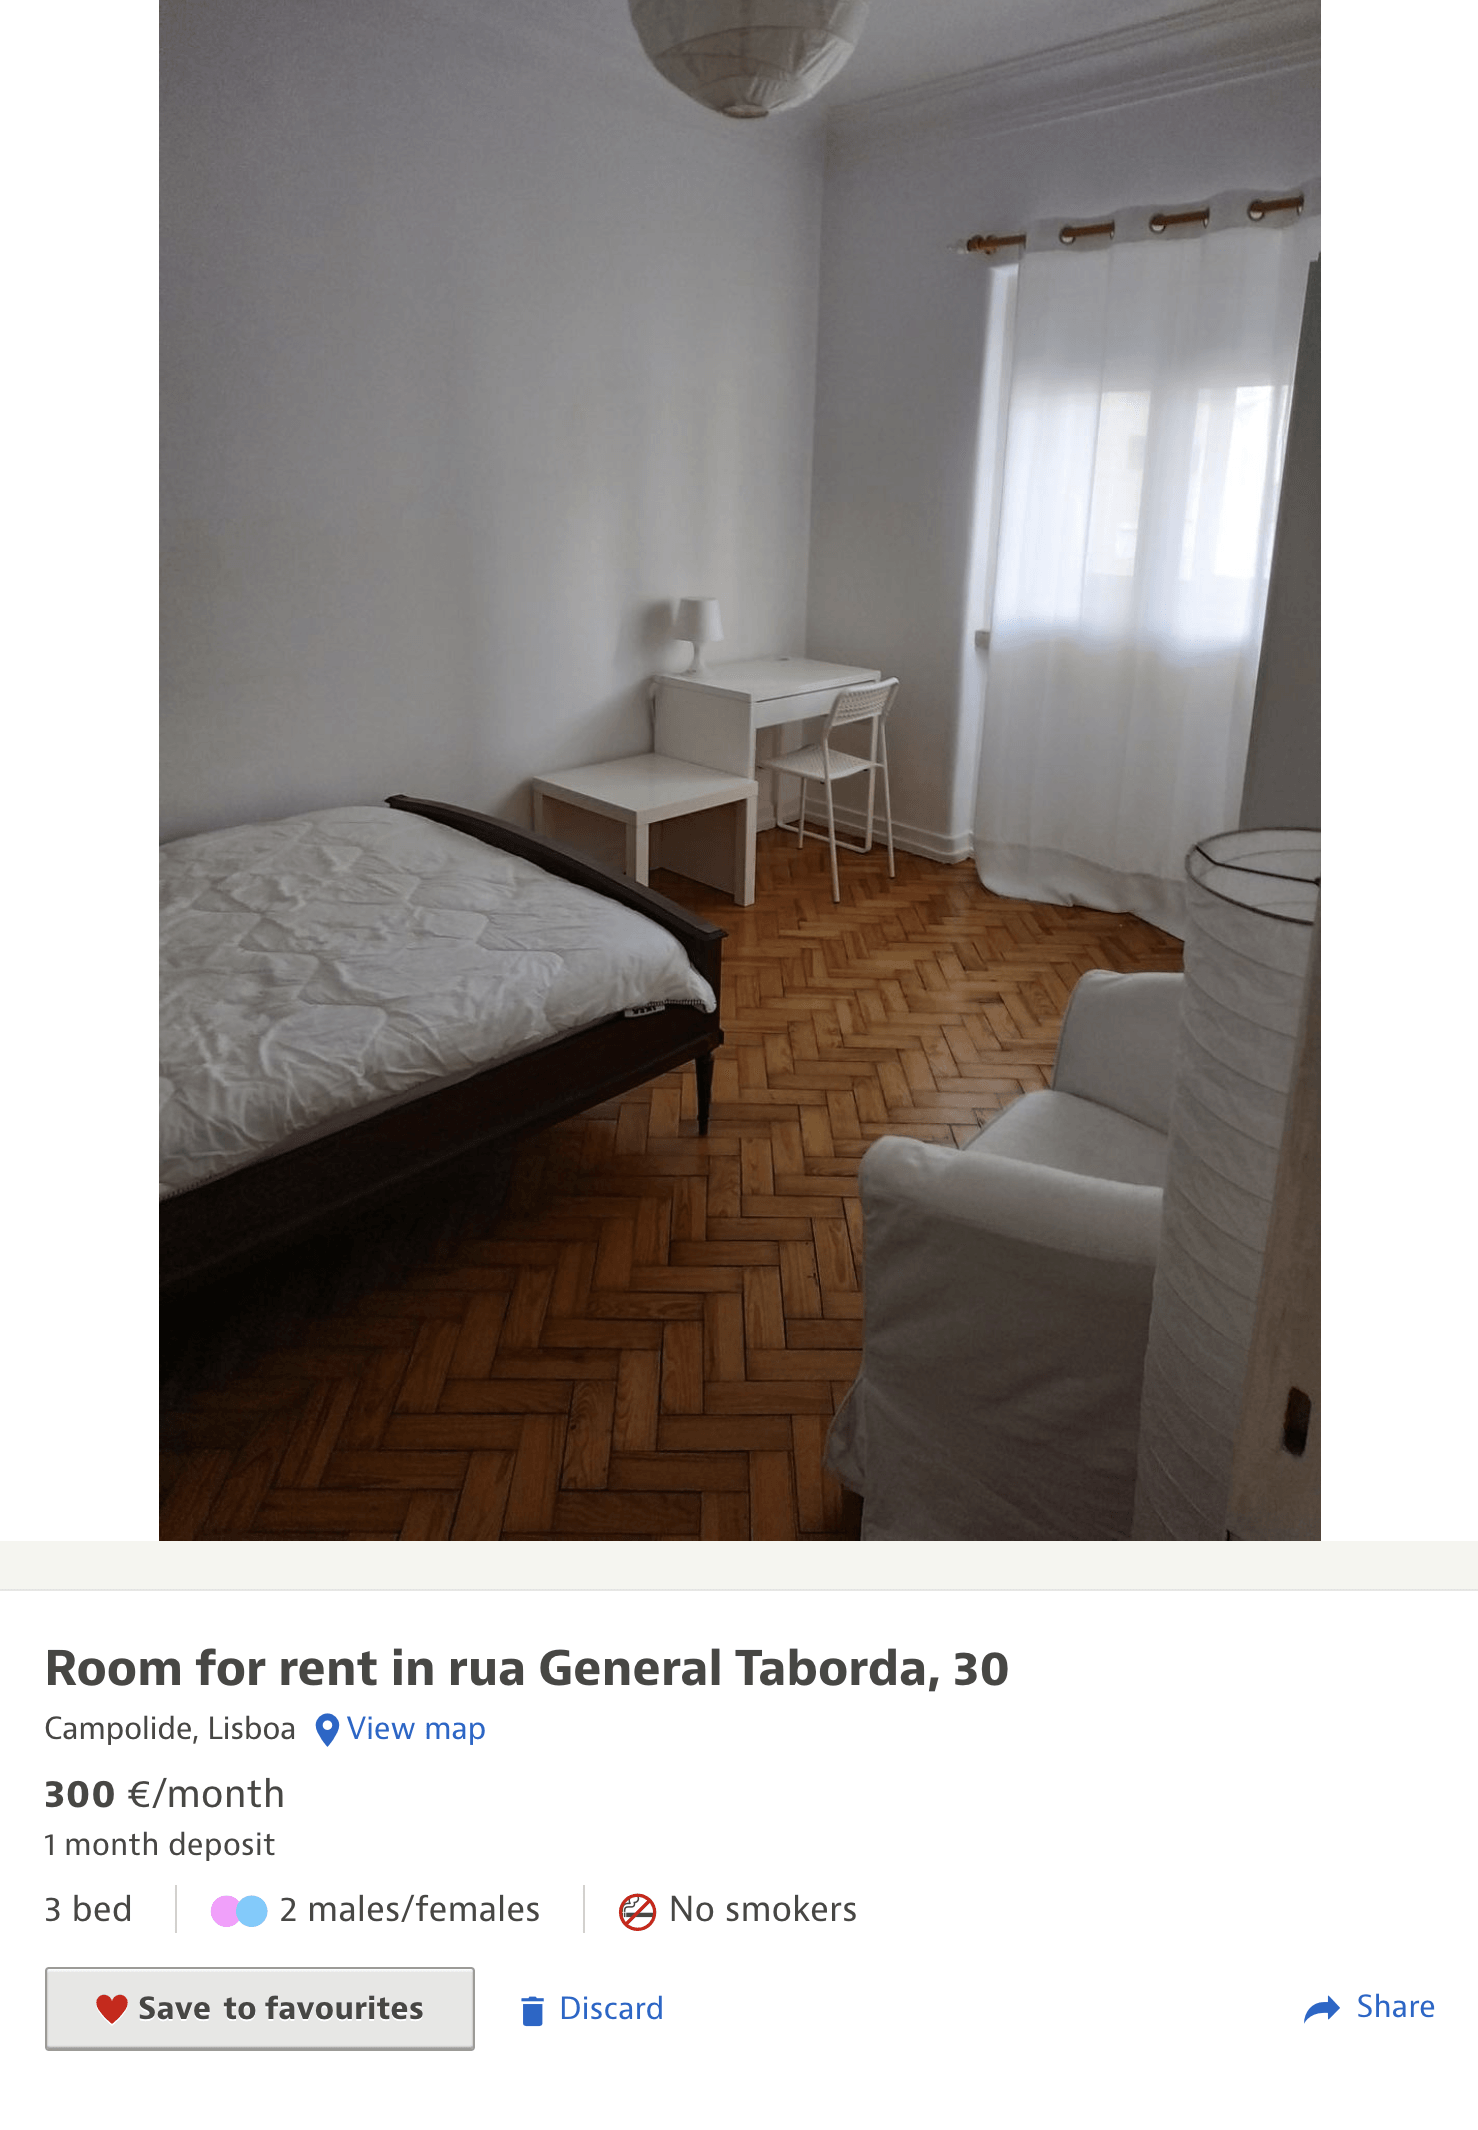 Простую комнату можно найти и за 300 € (21 545 ₽)